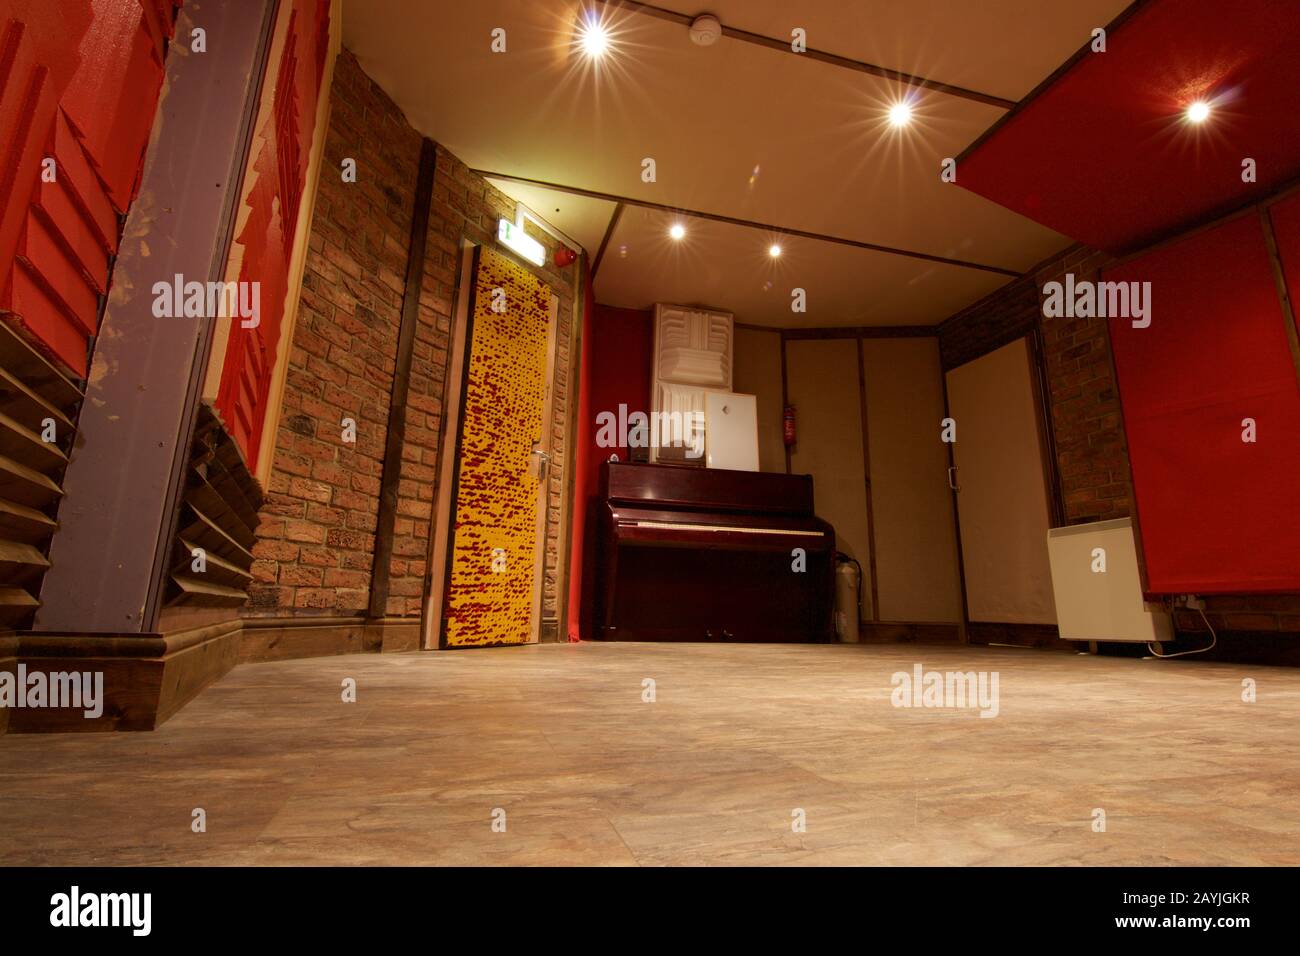 Sala vacía en el estudio de grabación con paredes rojas y piano vertical. Producción musical y espacio de trabajo para productores de discos Foto de stock